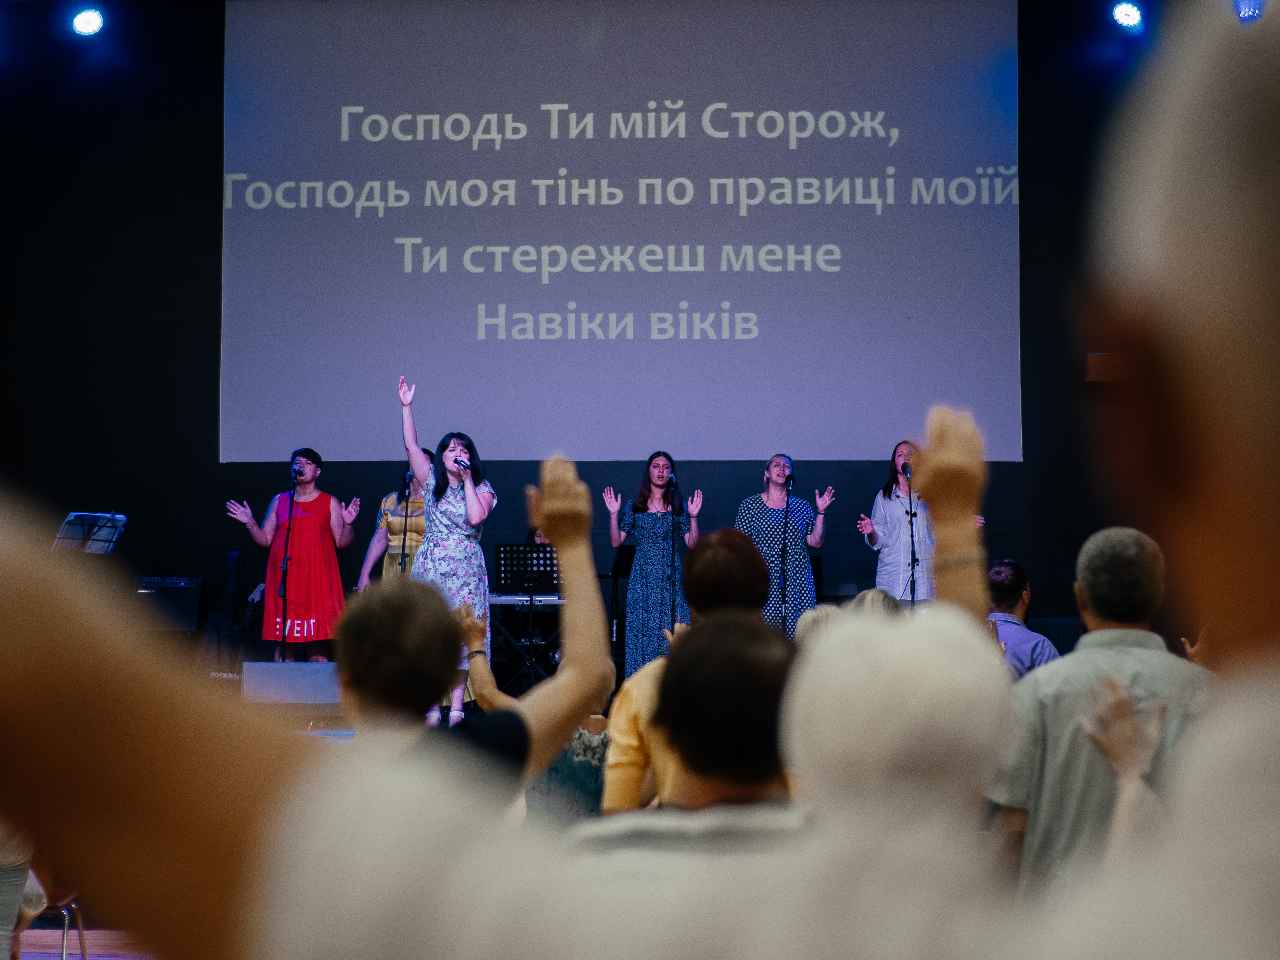  Богослужение церкви от 2022-07-24 